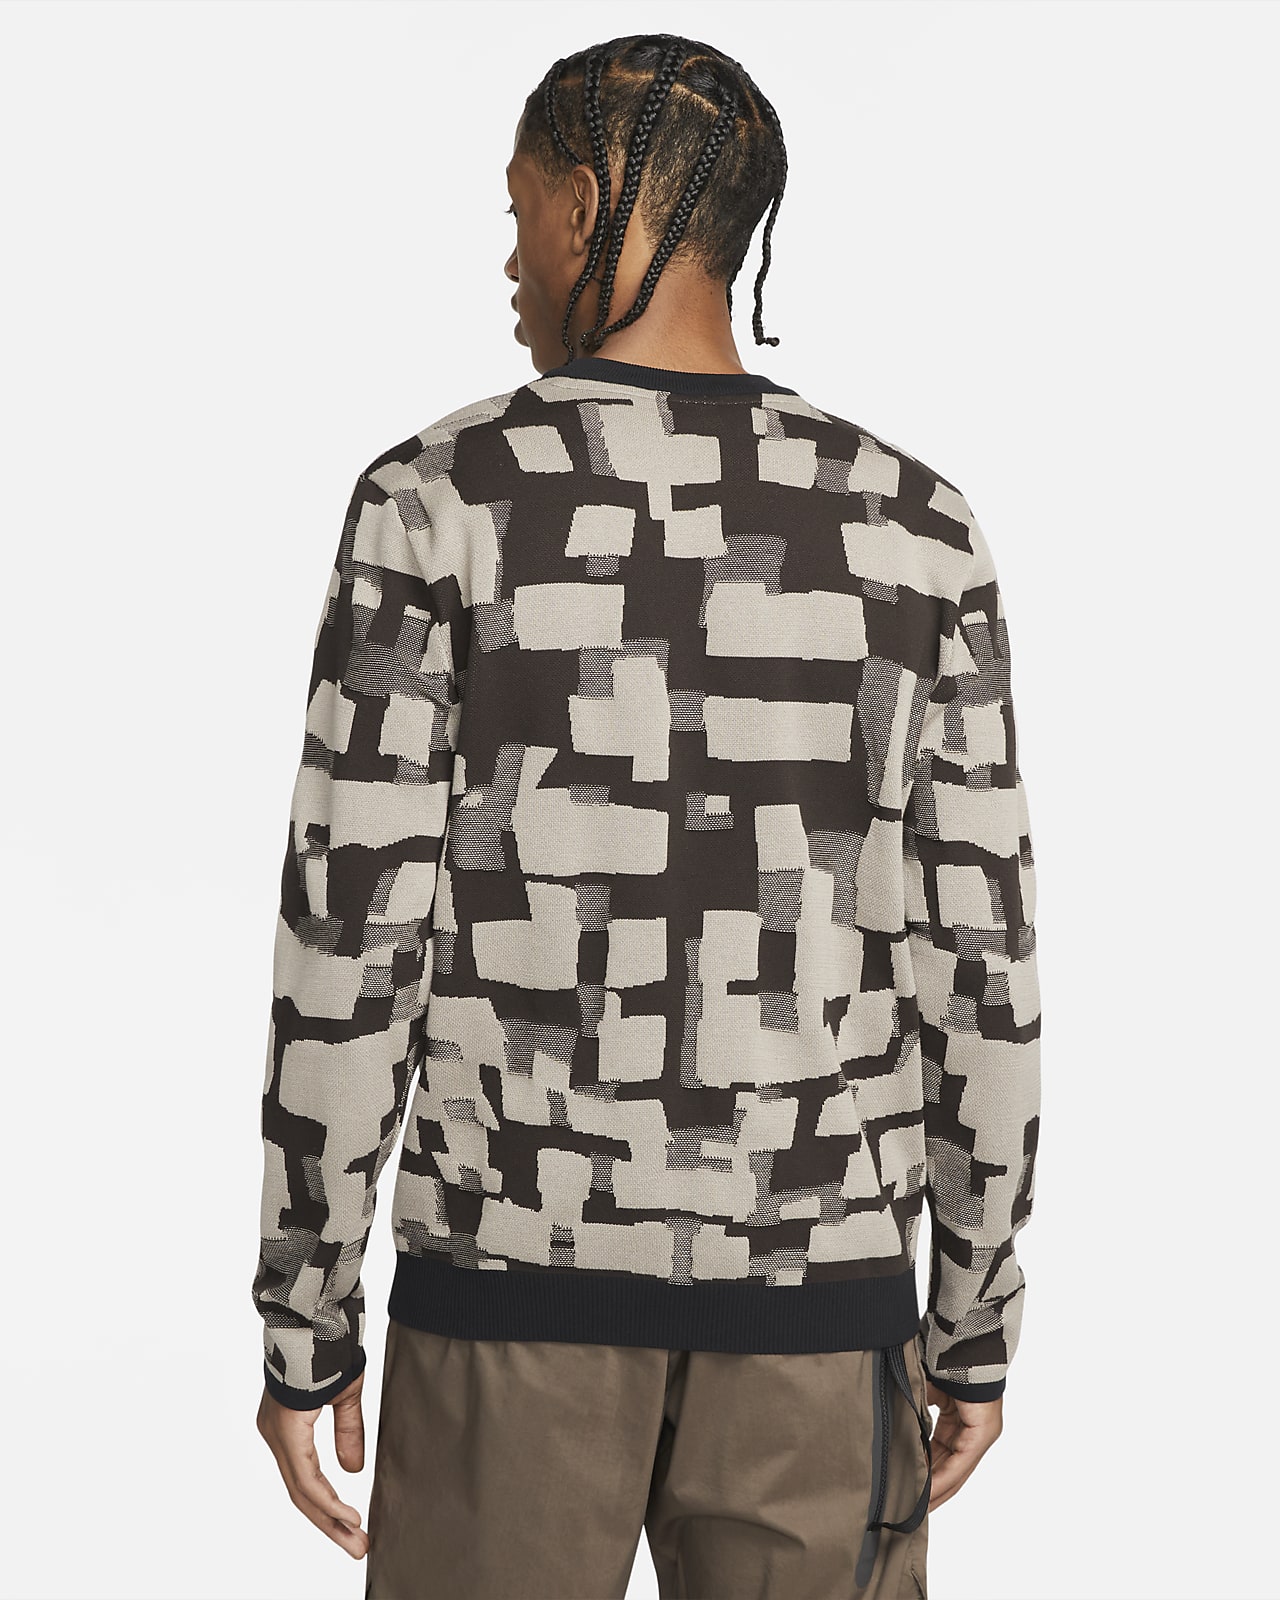 Nike Sportswear Tech Pack Men's Engineered Sweater